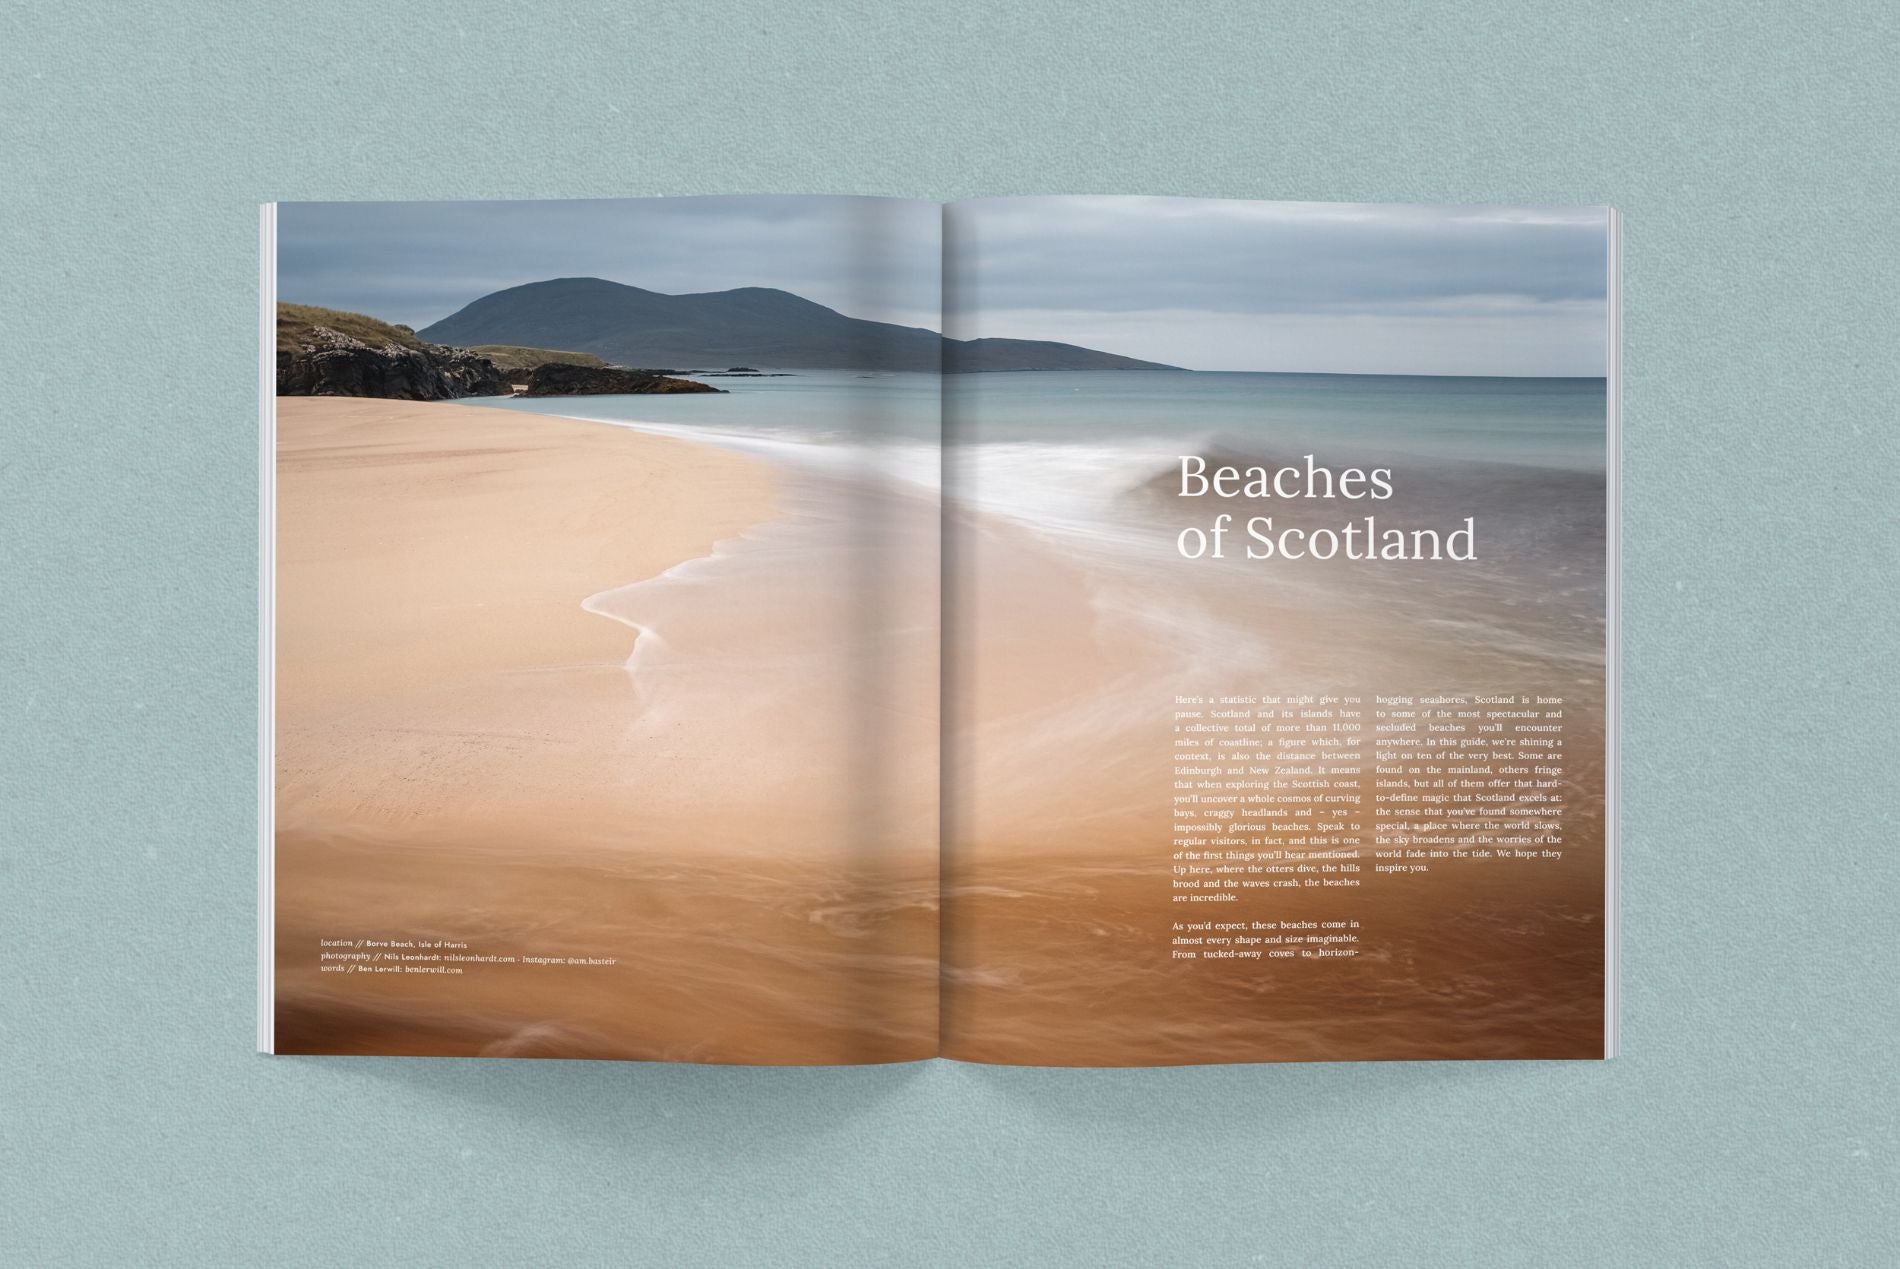 Hidden Scotland Magazine Issue 02 - Hidden Scotland